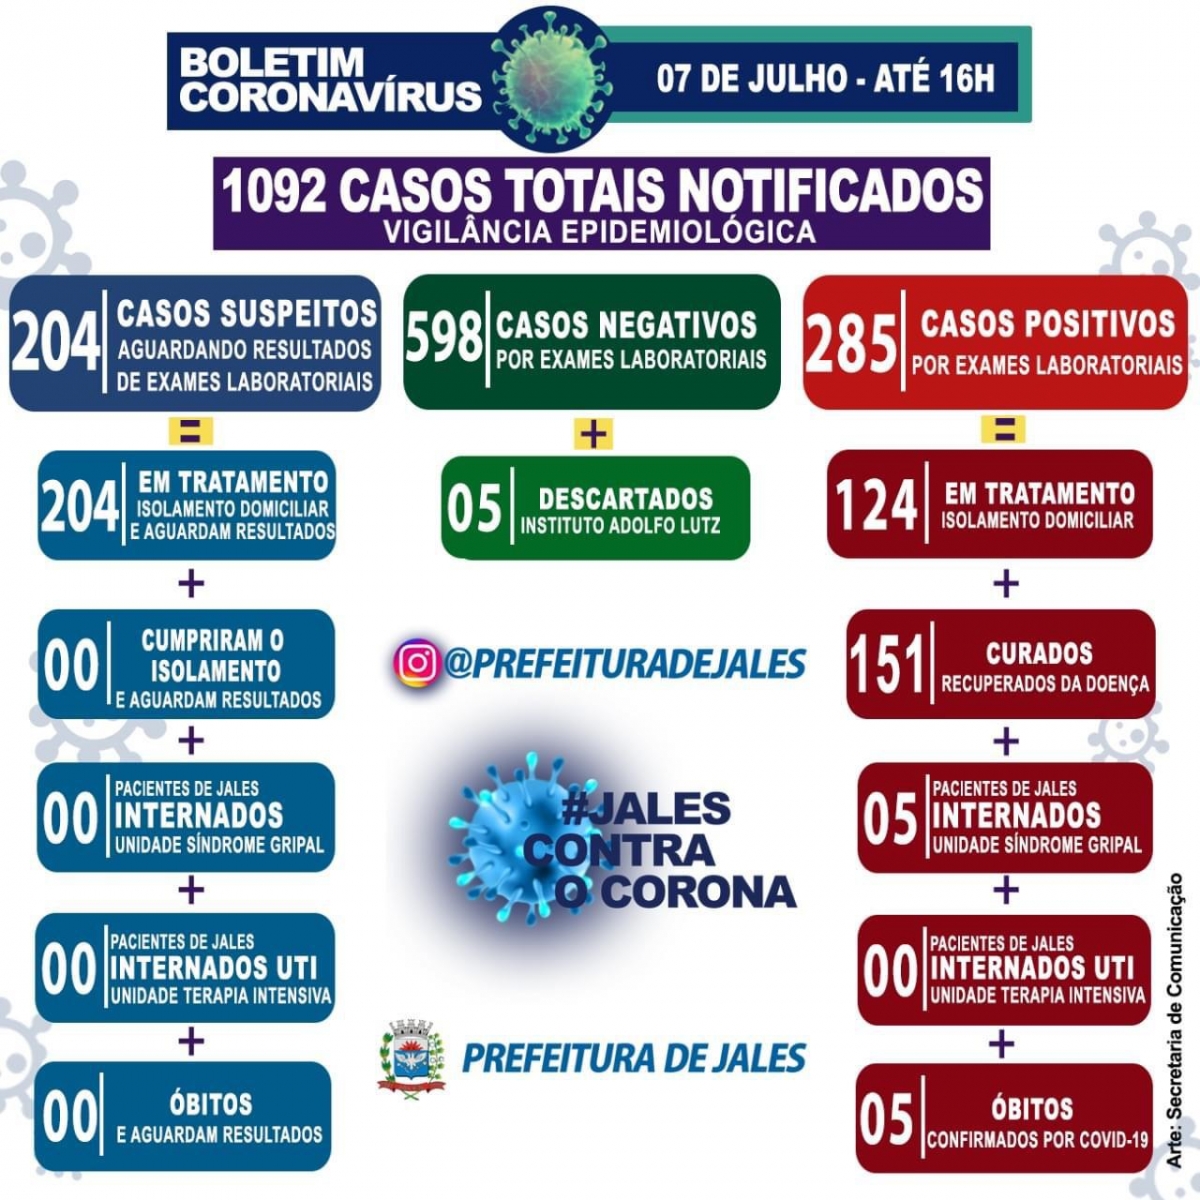 Jales - 30 notificações de casos suspeitos para a Covid-19 (Coronavírus) nas últimas 24 horas.